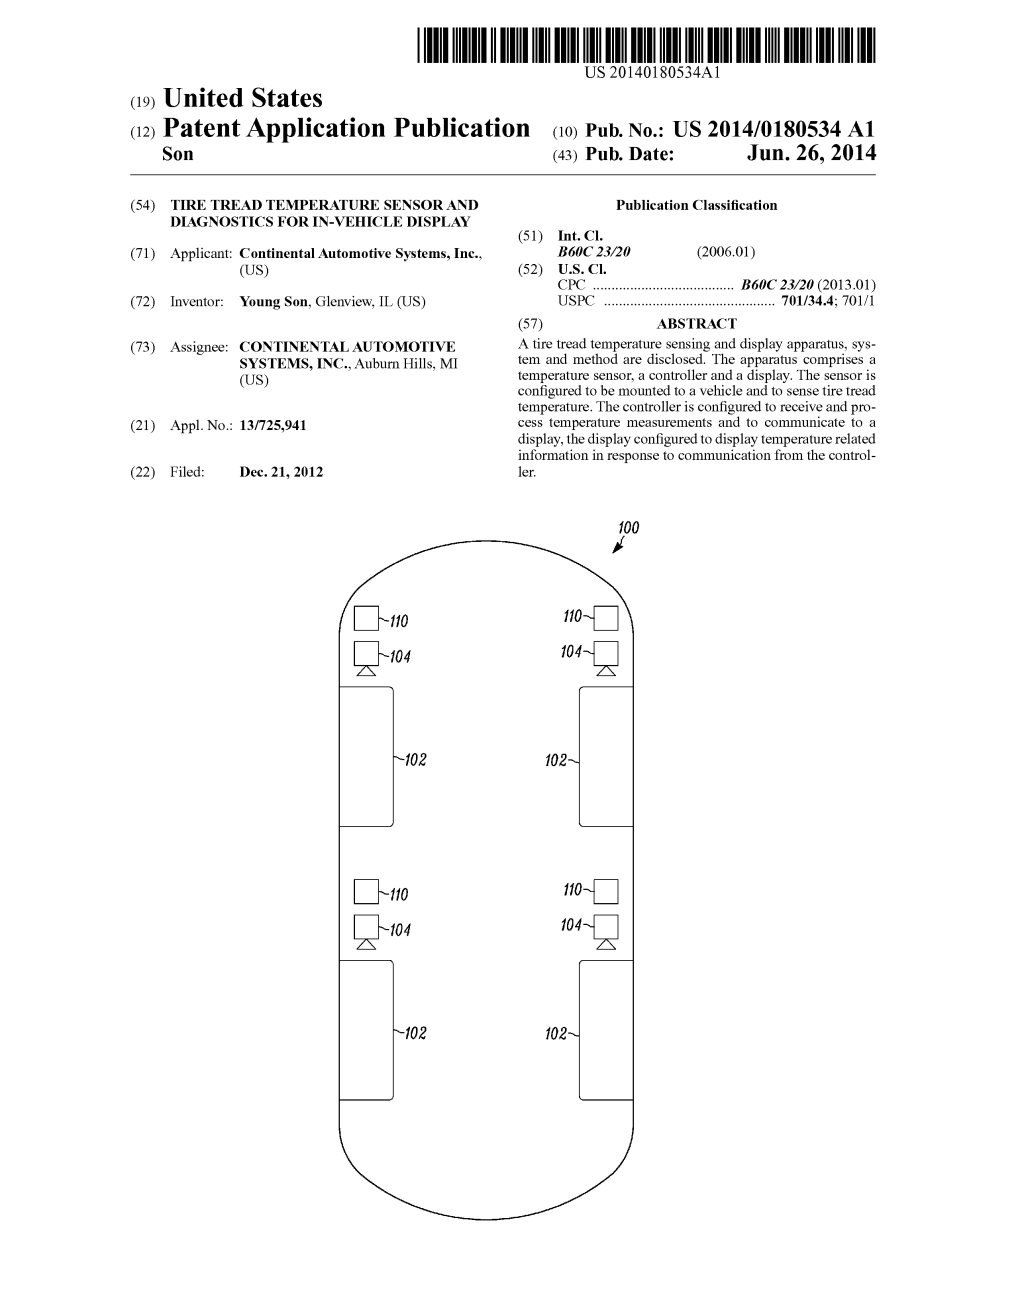 (12) Patent Application Publication (10) Pub. No.: US 2014/0180534 A1 Son (43) Pub